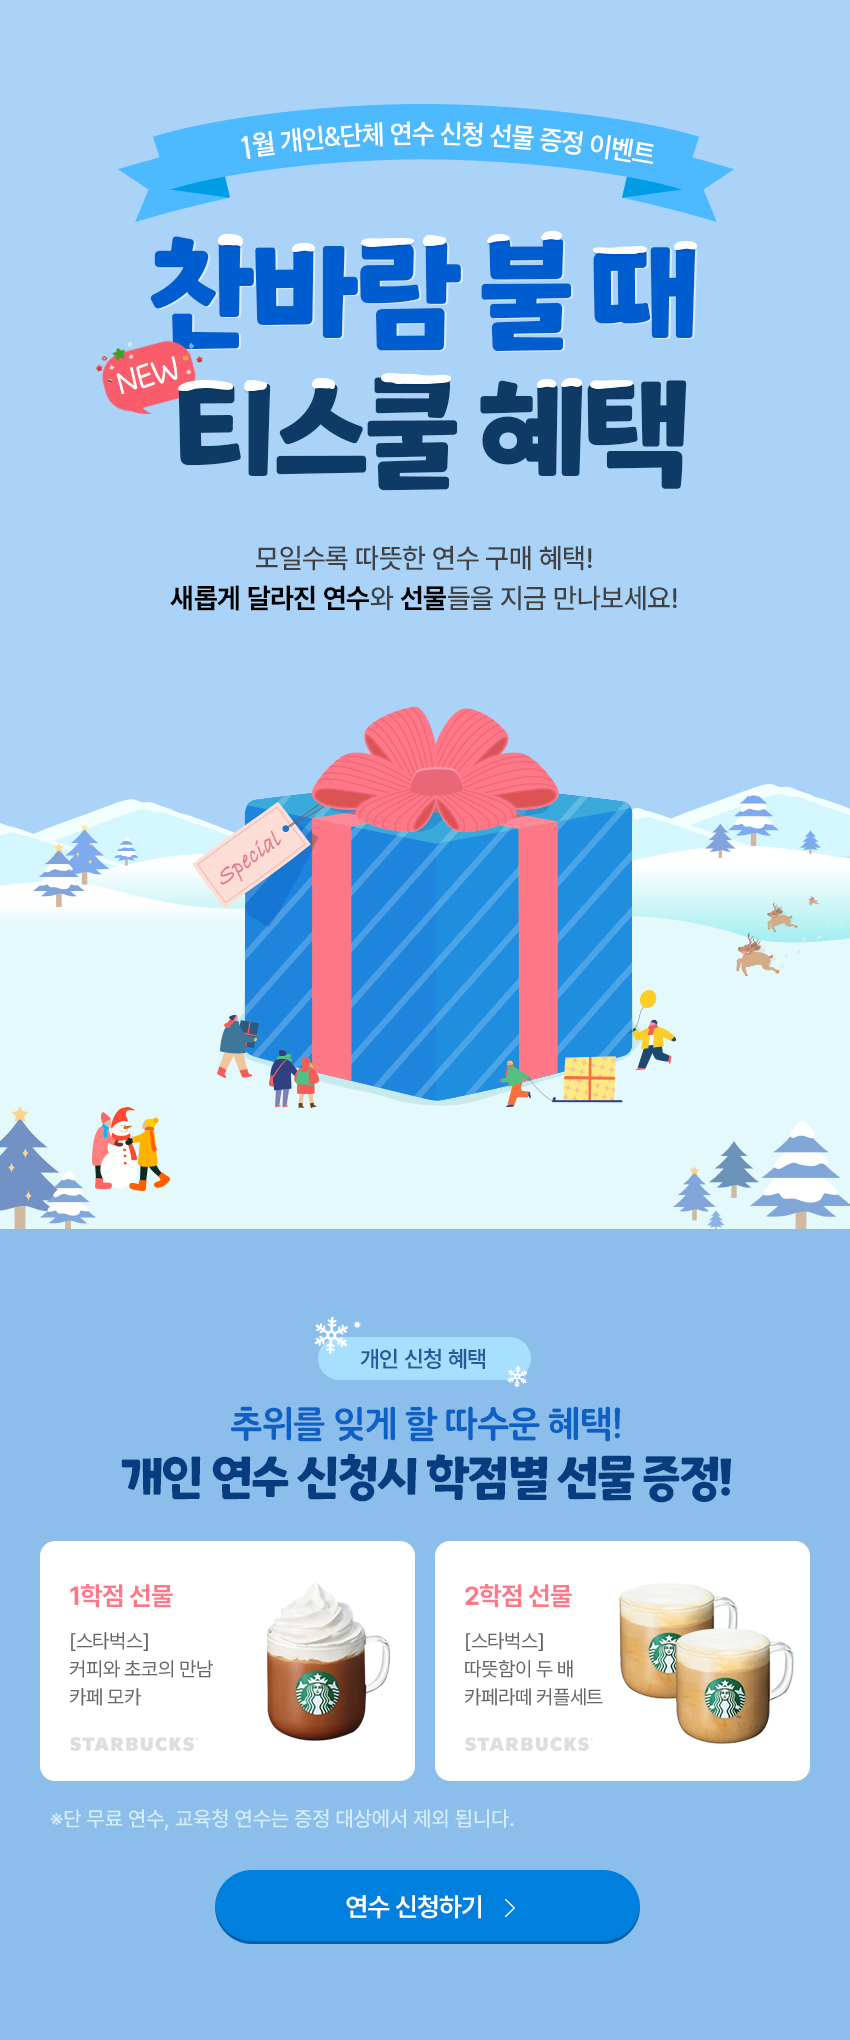 11~12월 개인&단체 연수 신청 선물 증정 이벤트